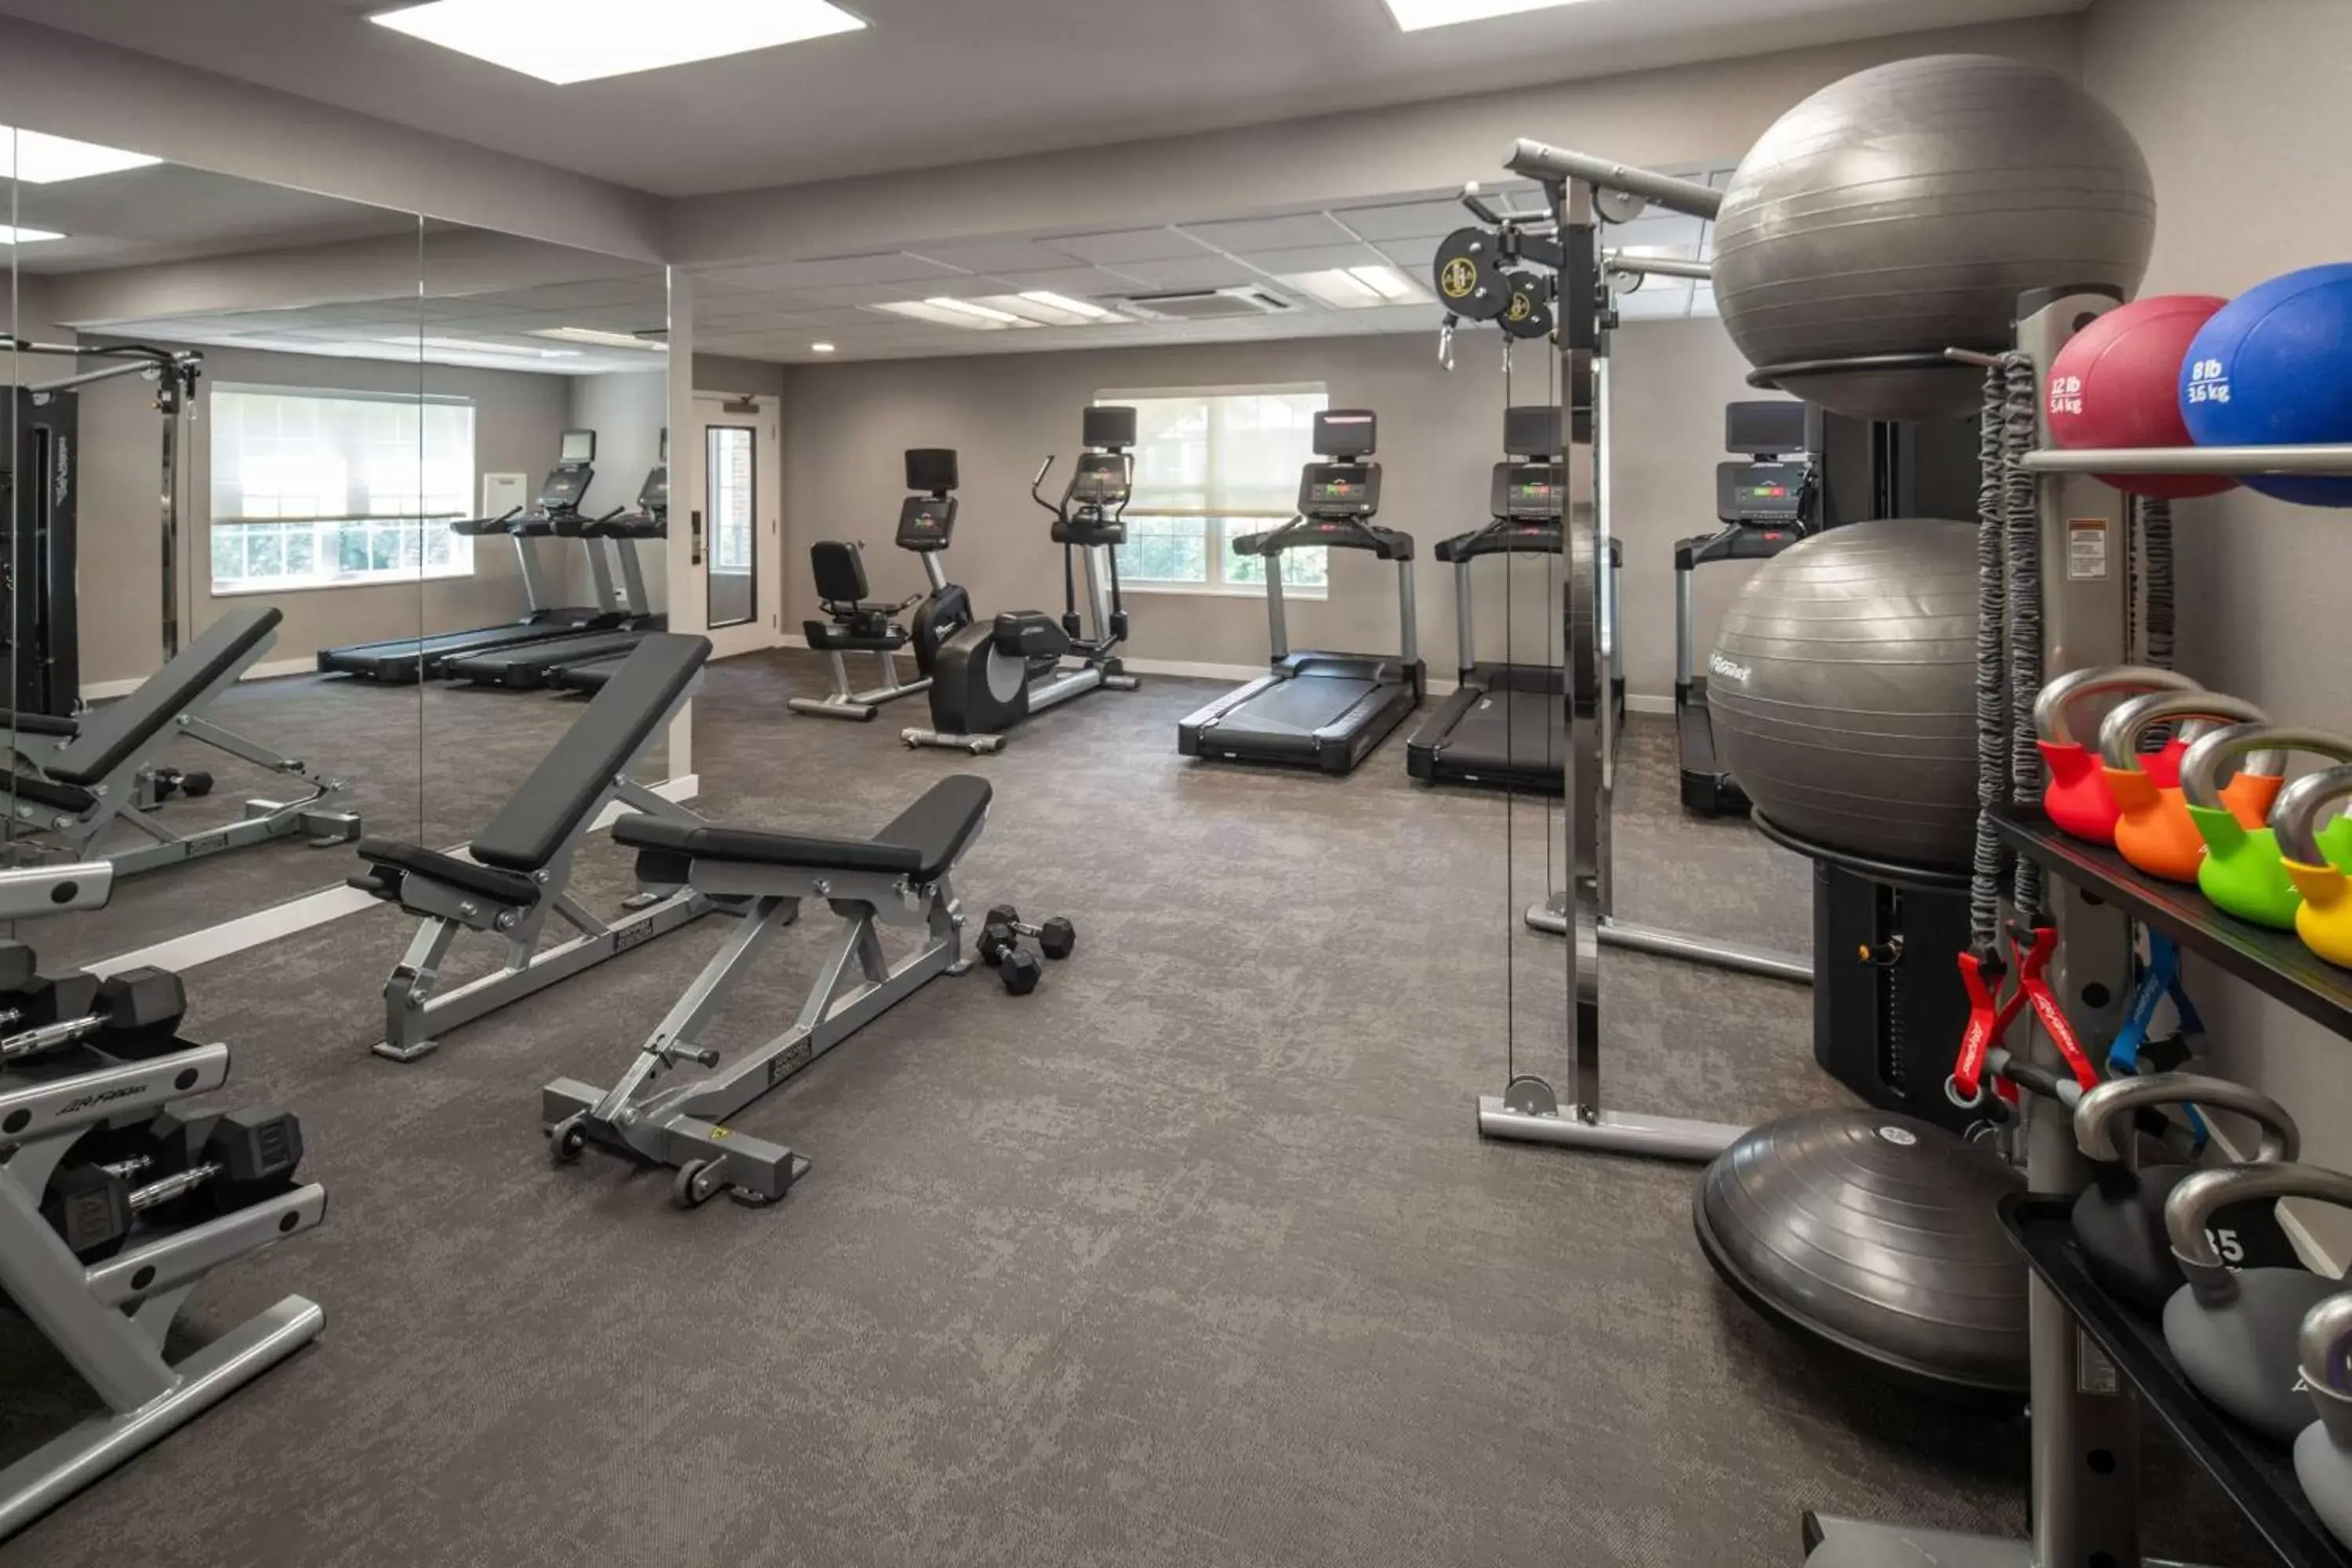 Fitness centre/facilities, Fitness Center/Facilities in Sonesta ES Suites Fairfax Fair Lakes